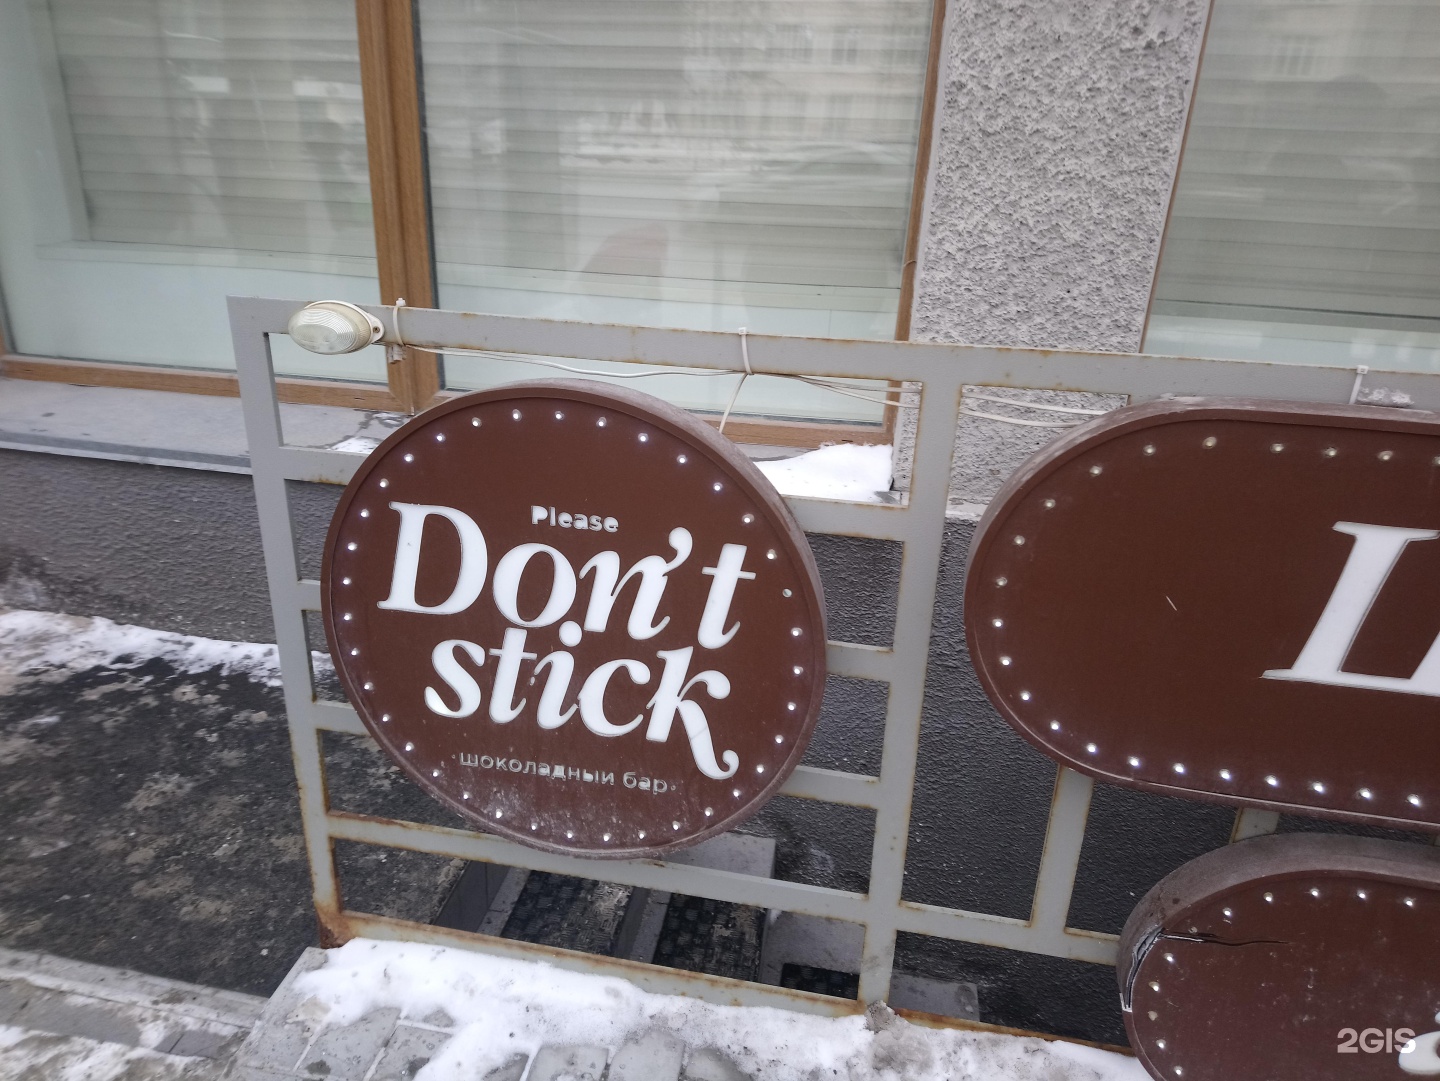 Стик новосибирск. Please don't Stick, Новосибирск. Шоколадный бар Новосибирск don't Stick. Донт стик шоколадный. Шоколадный гастробар please don t Stick.